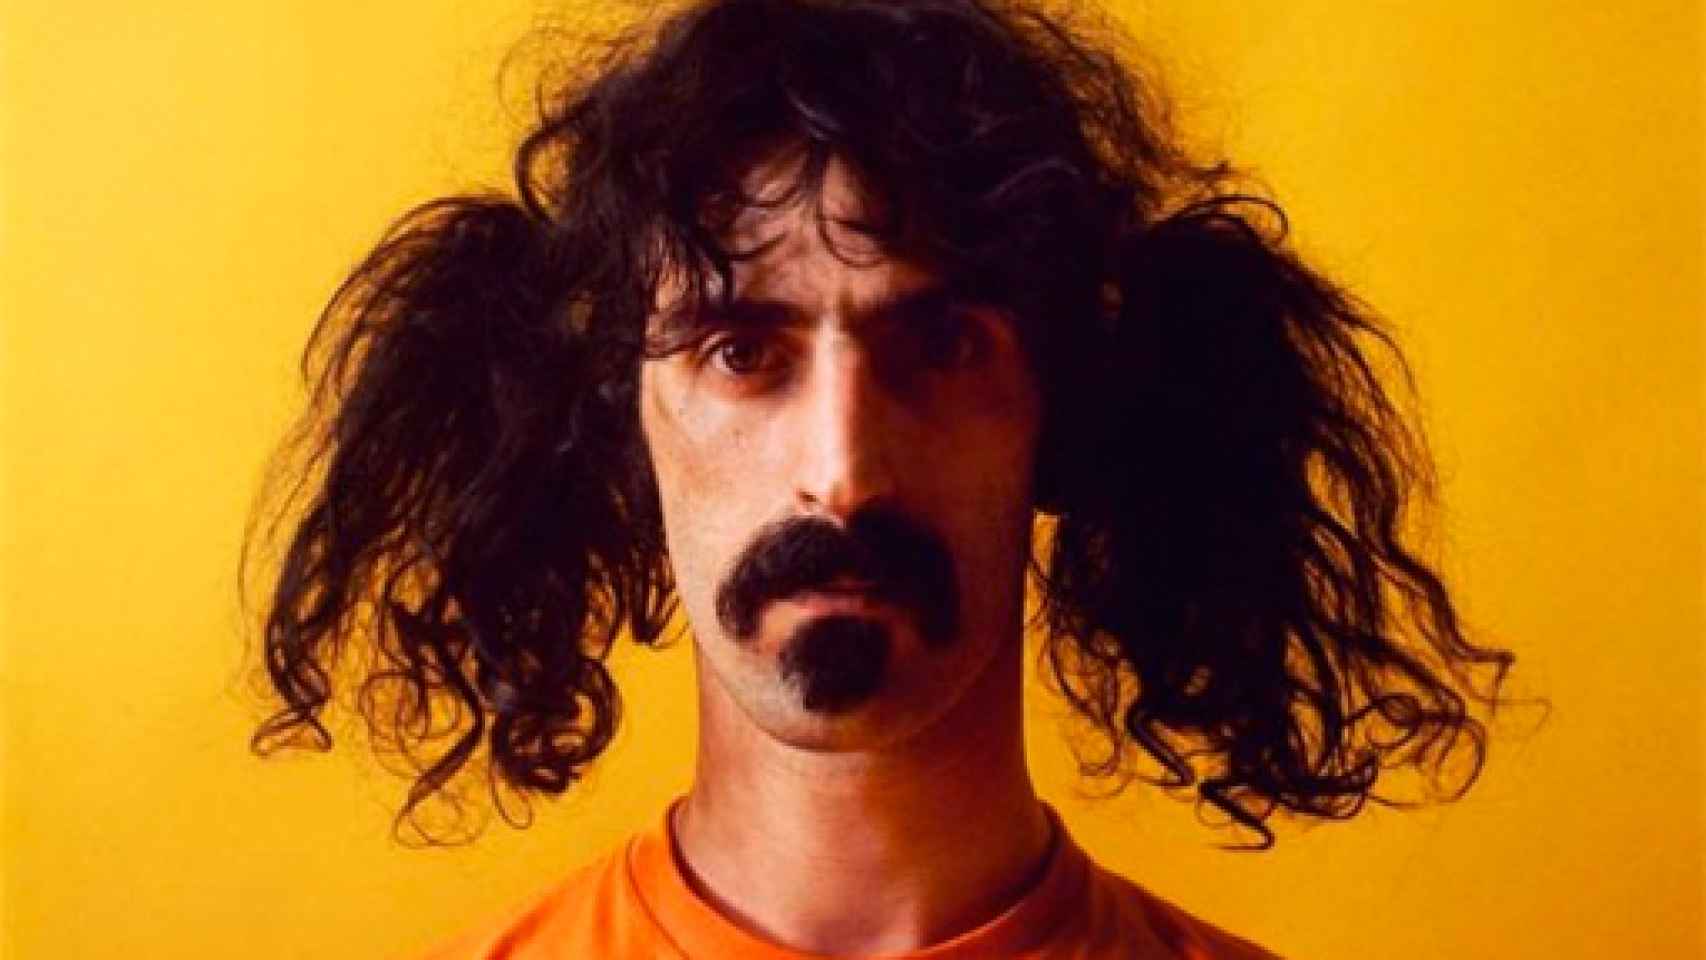 Image: Frank Zappa, el niño grande dadaísta